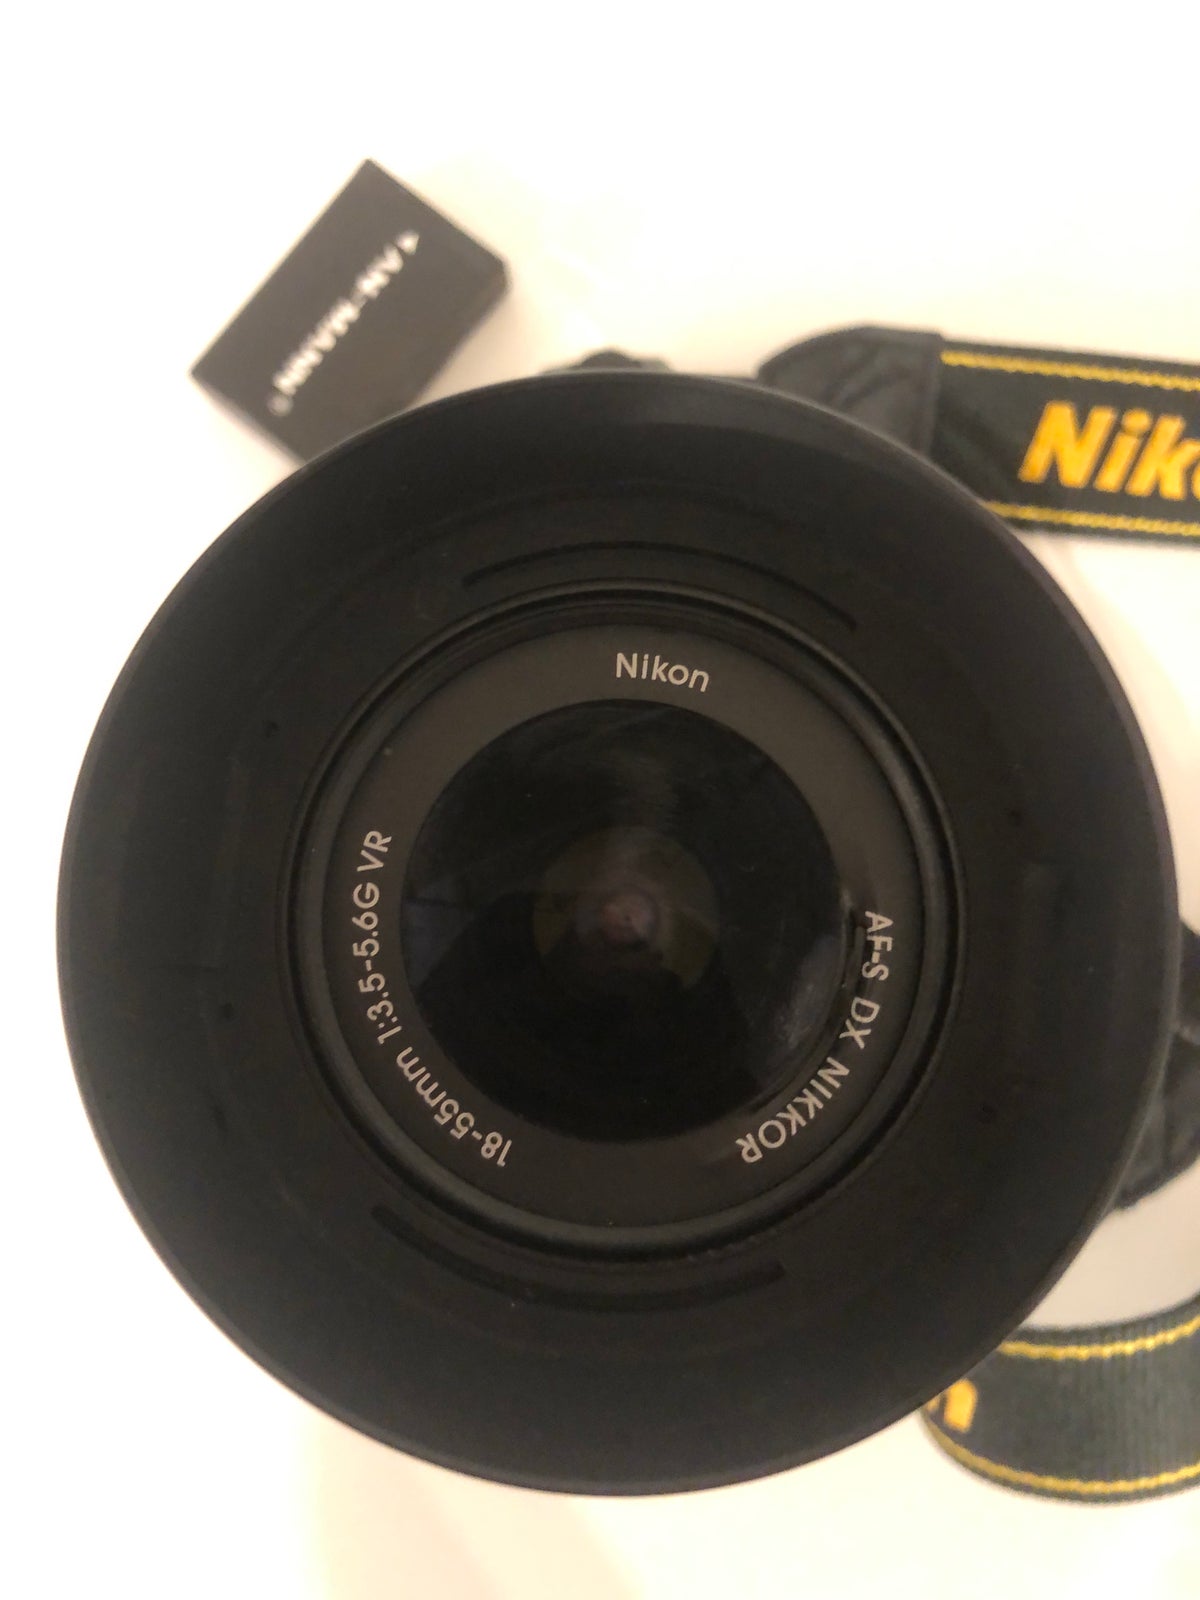 Andet, Nikon 5000D, spejlrefleks